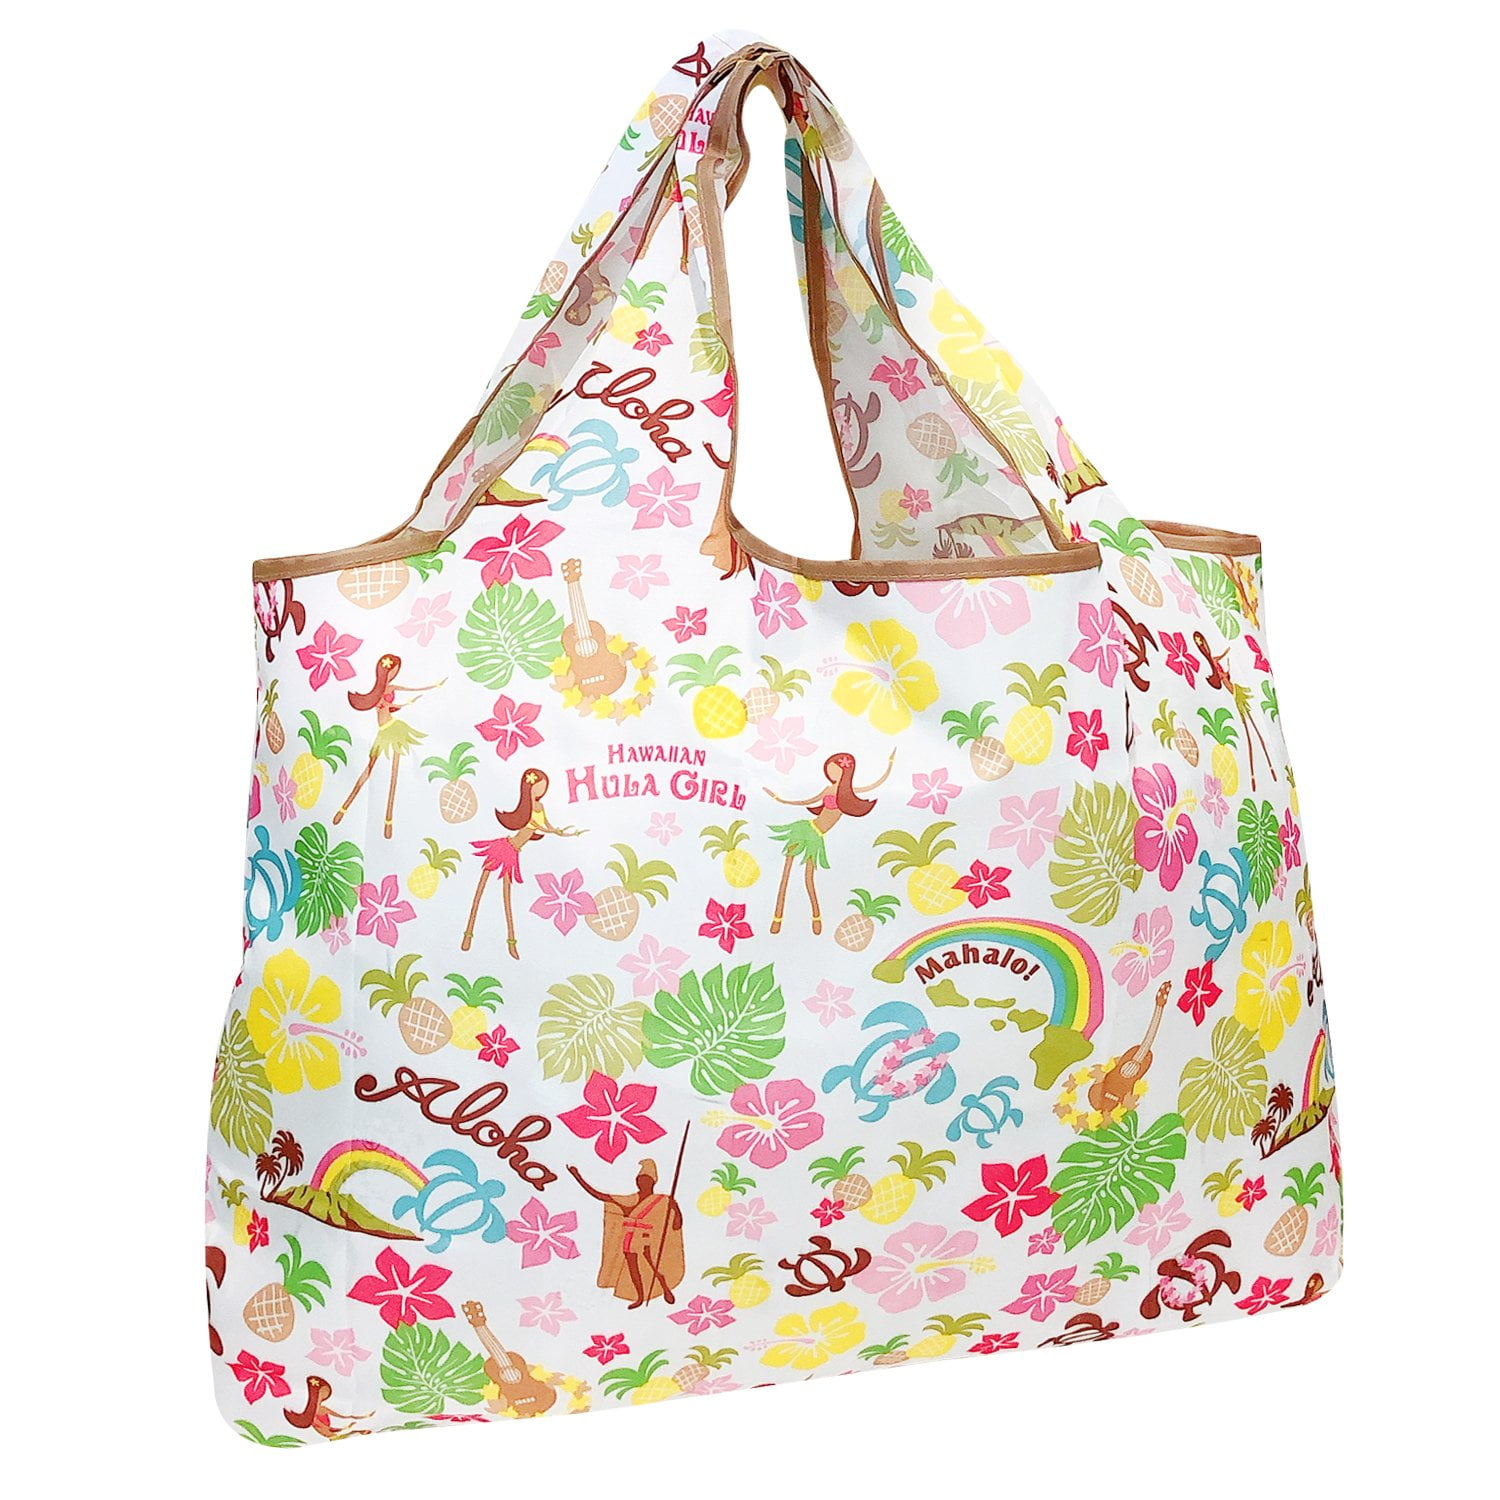 8 X Shopping Bag Tropical Reusable Grocery Tote Carry Portable Handbag Non Woven